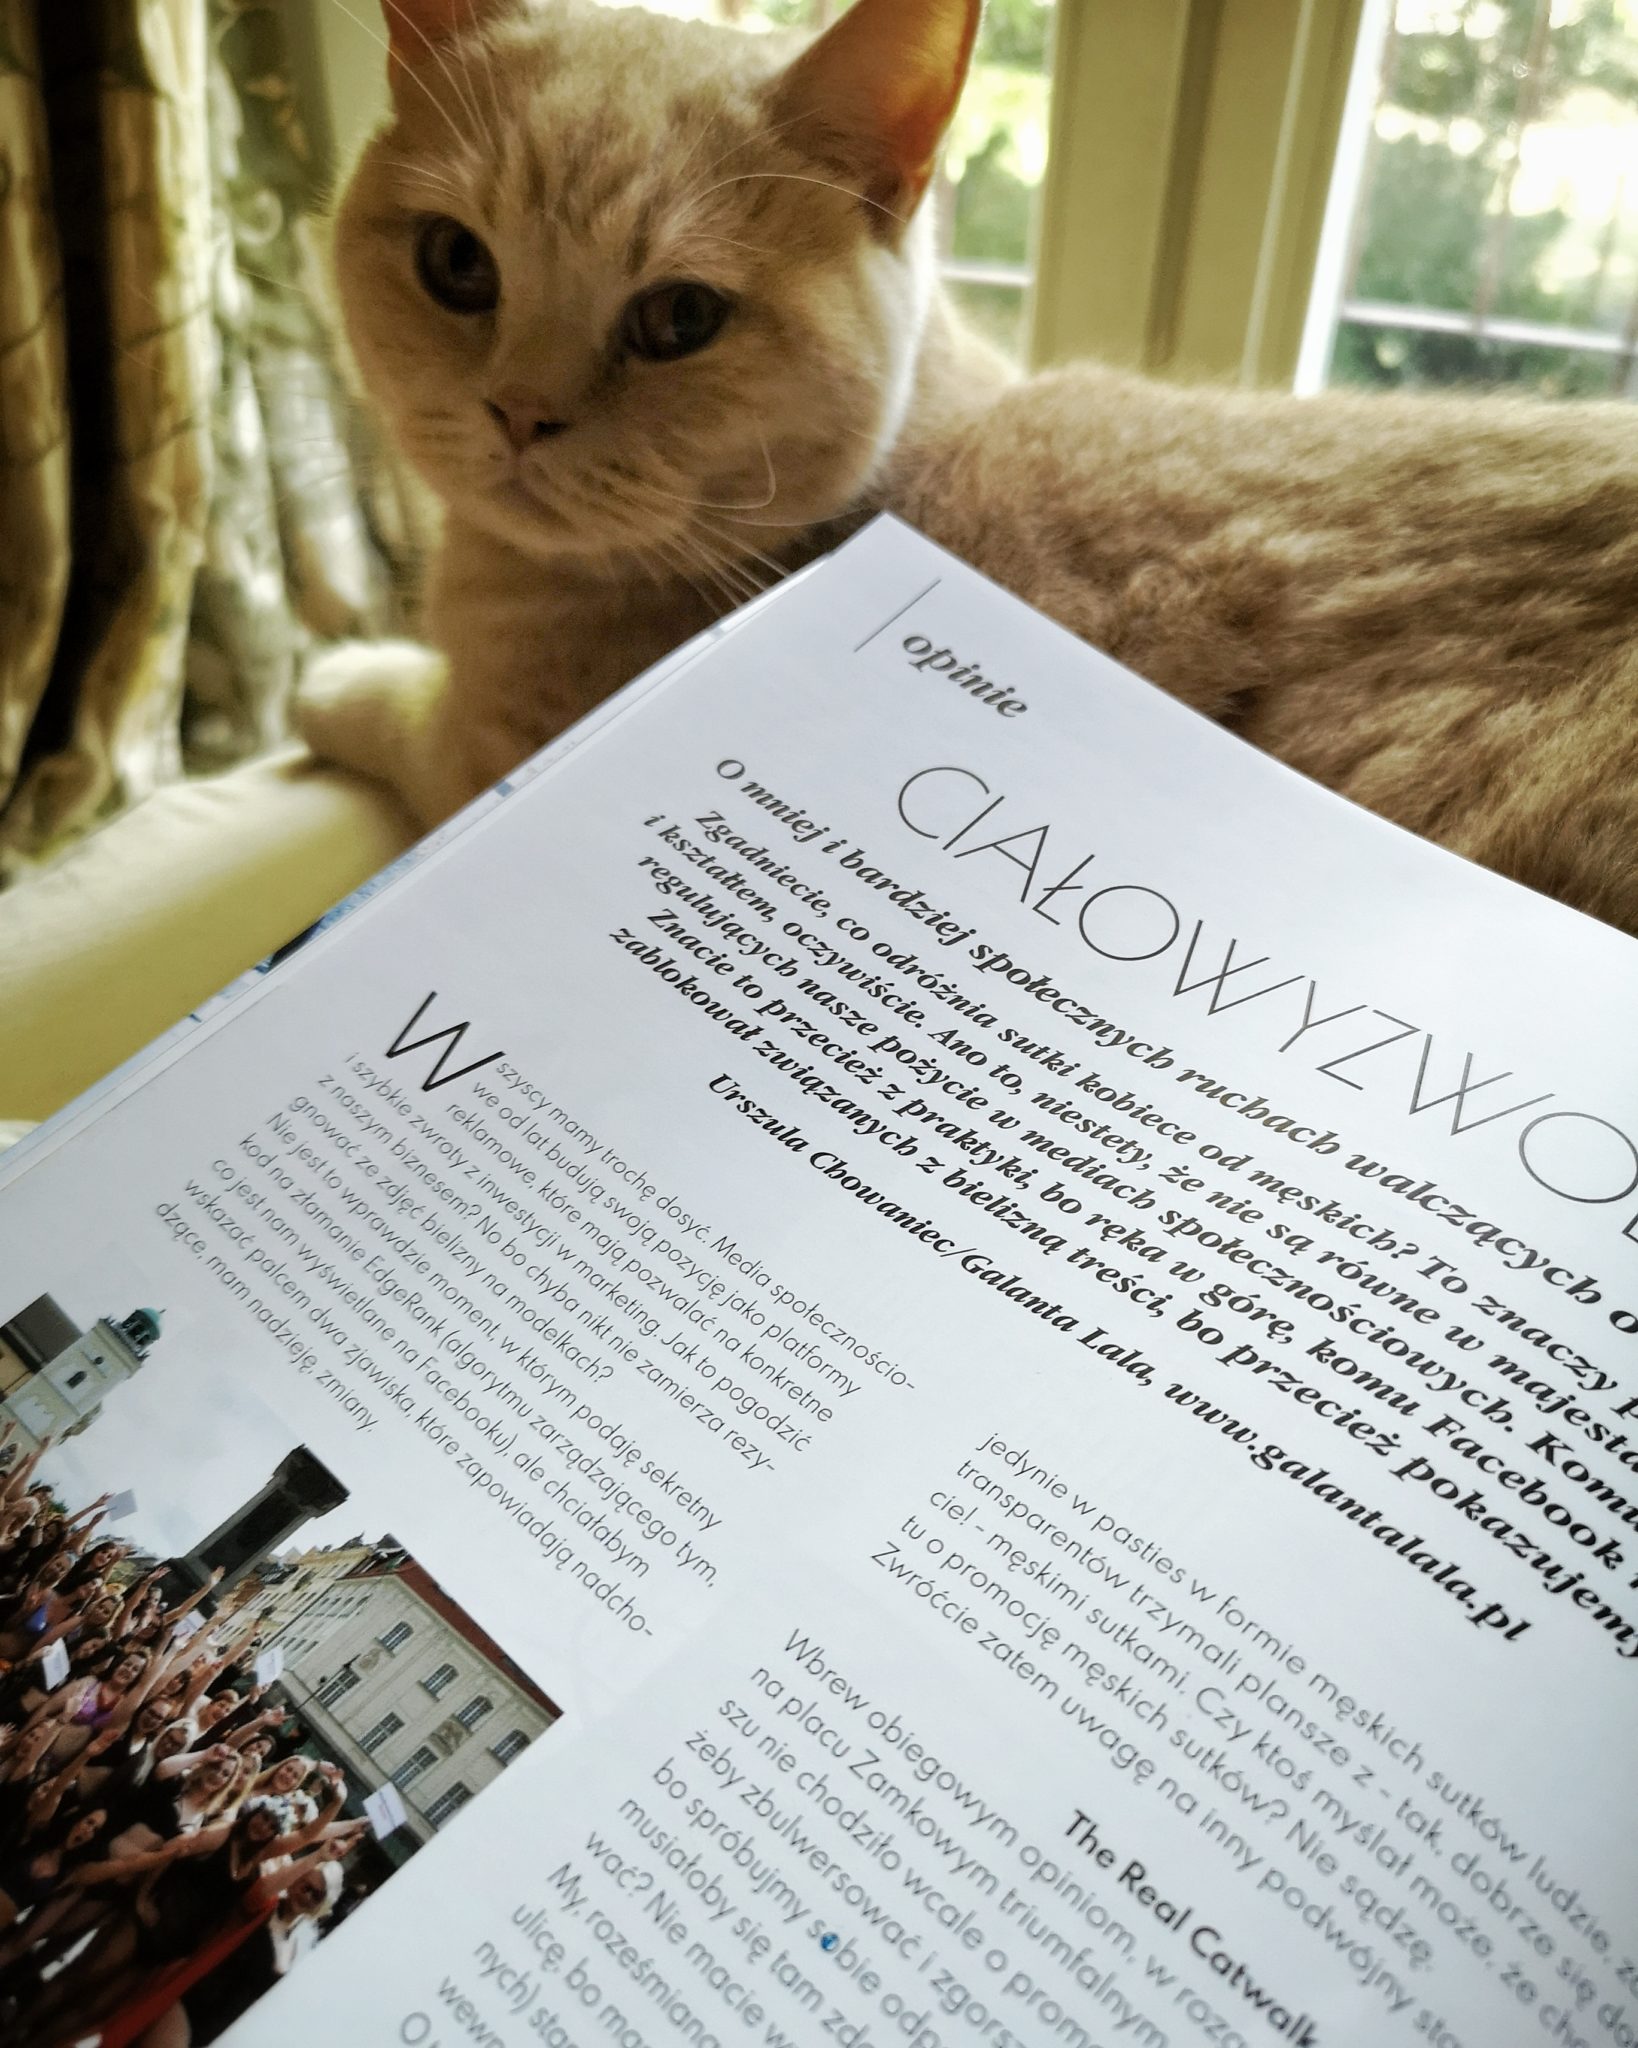 na pierwszym planie magazyn Modna Bielina otwarty na artykule "Ciałowyzwolenie", w tle kremowy pan kotek i okno balkonowe